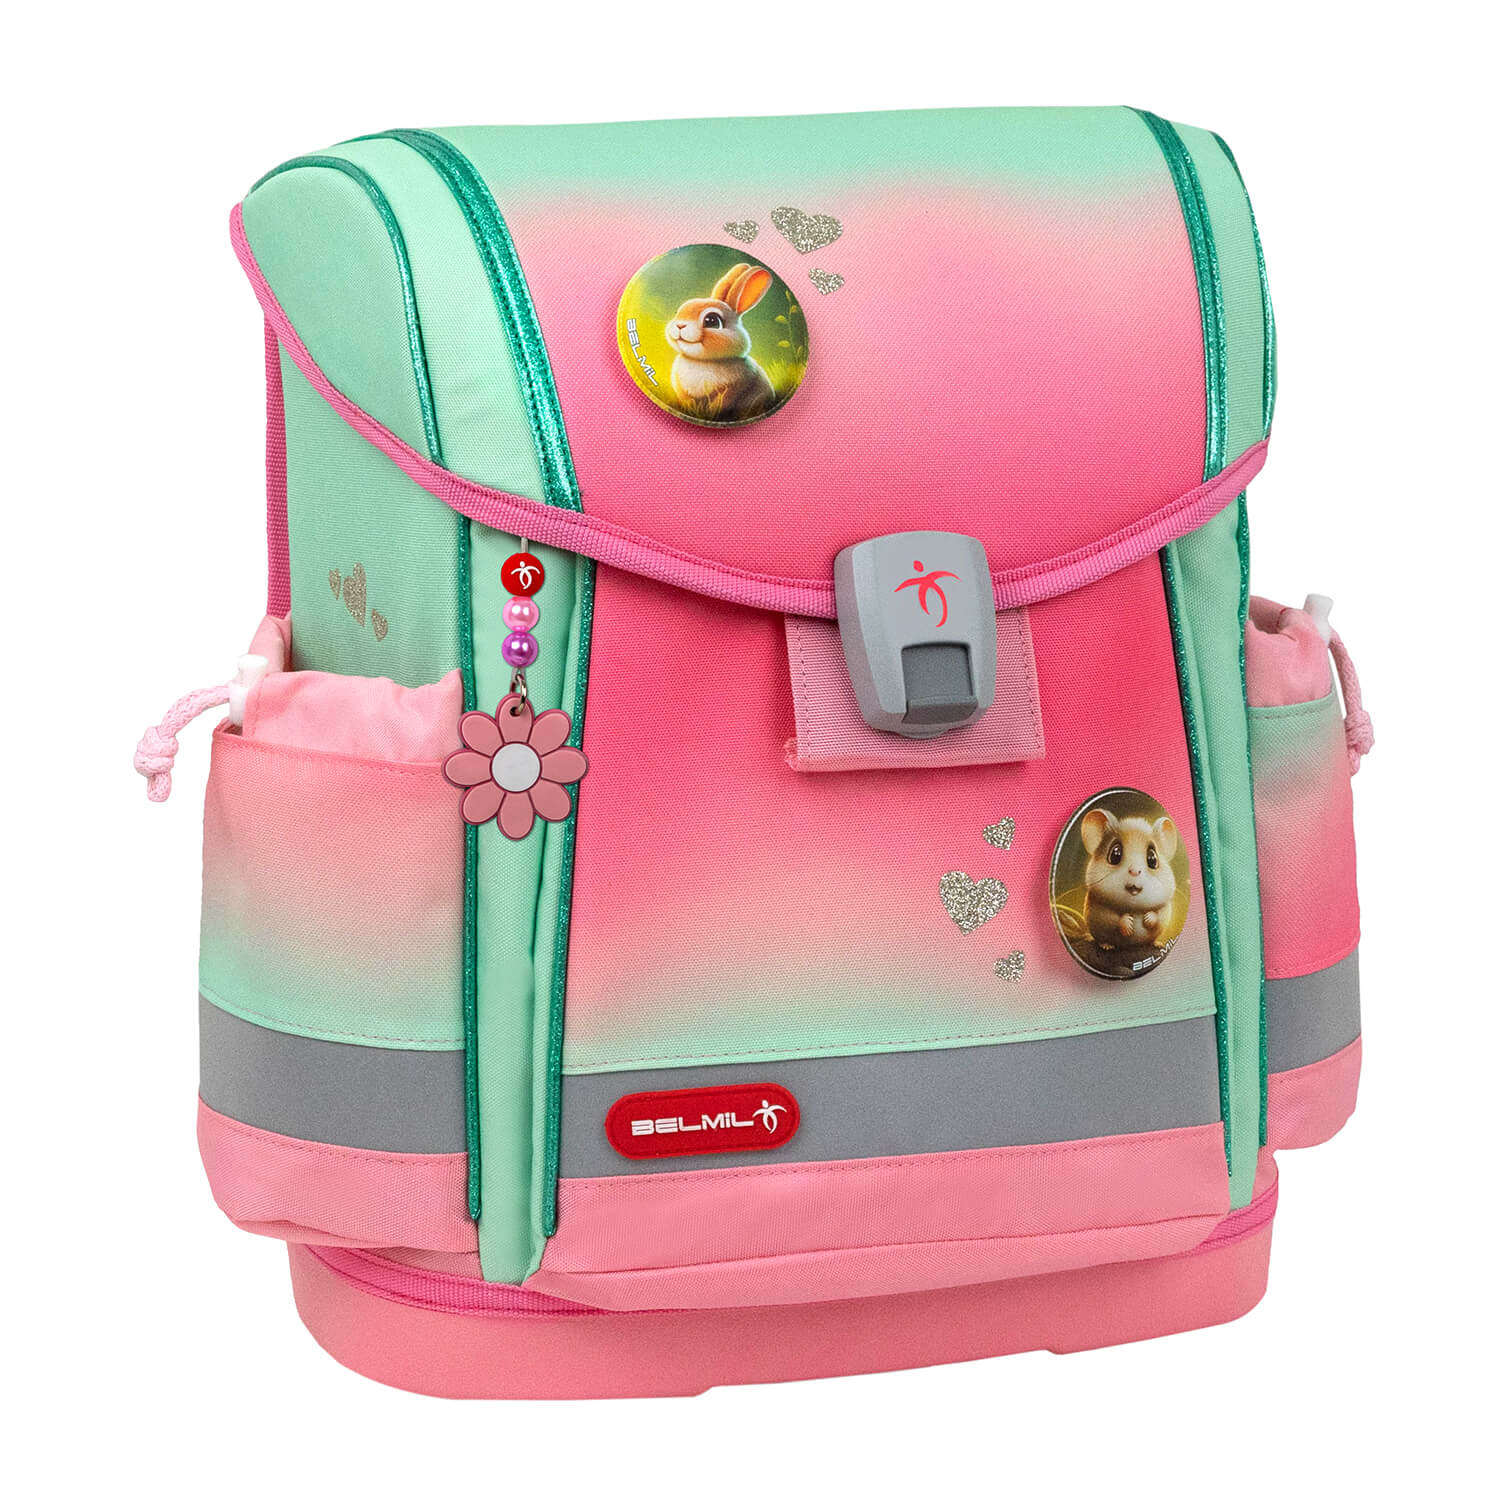 Classy Plus Mint Rose Ombre schoolbag set 5 pcs